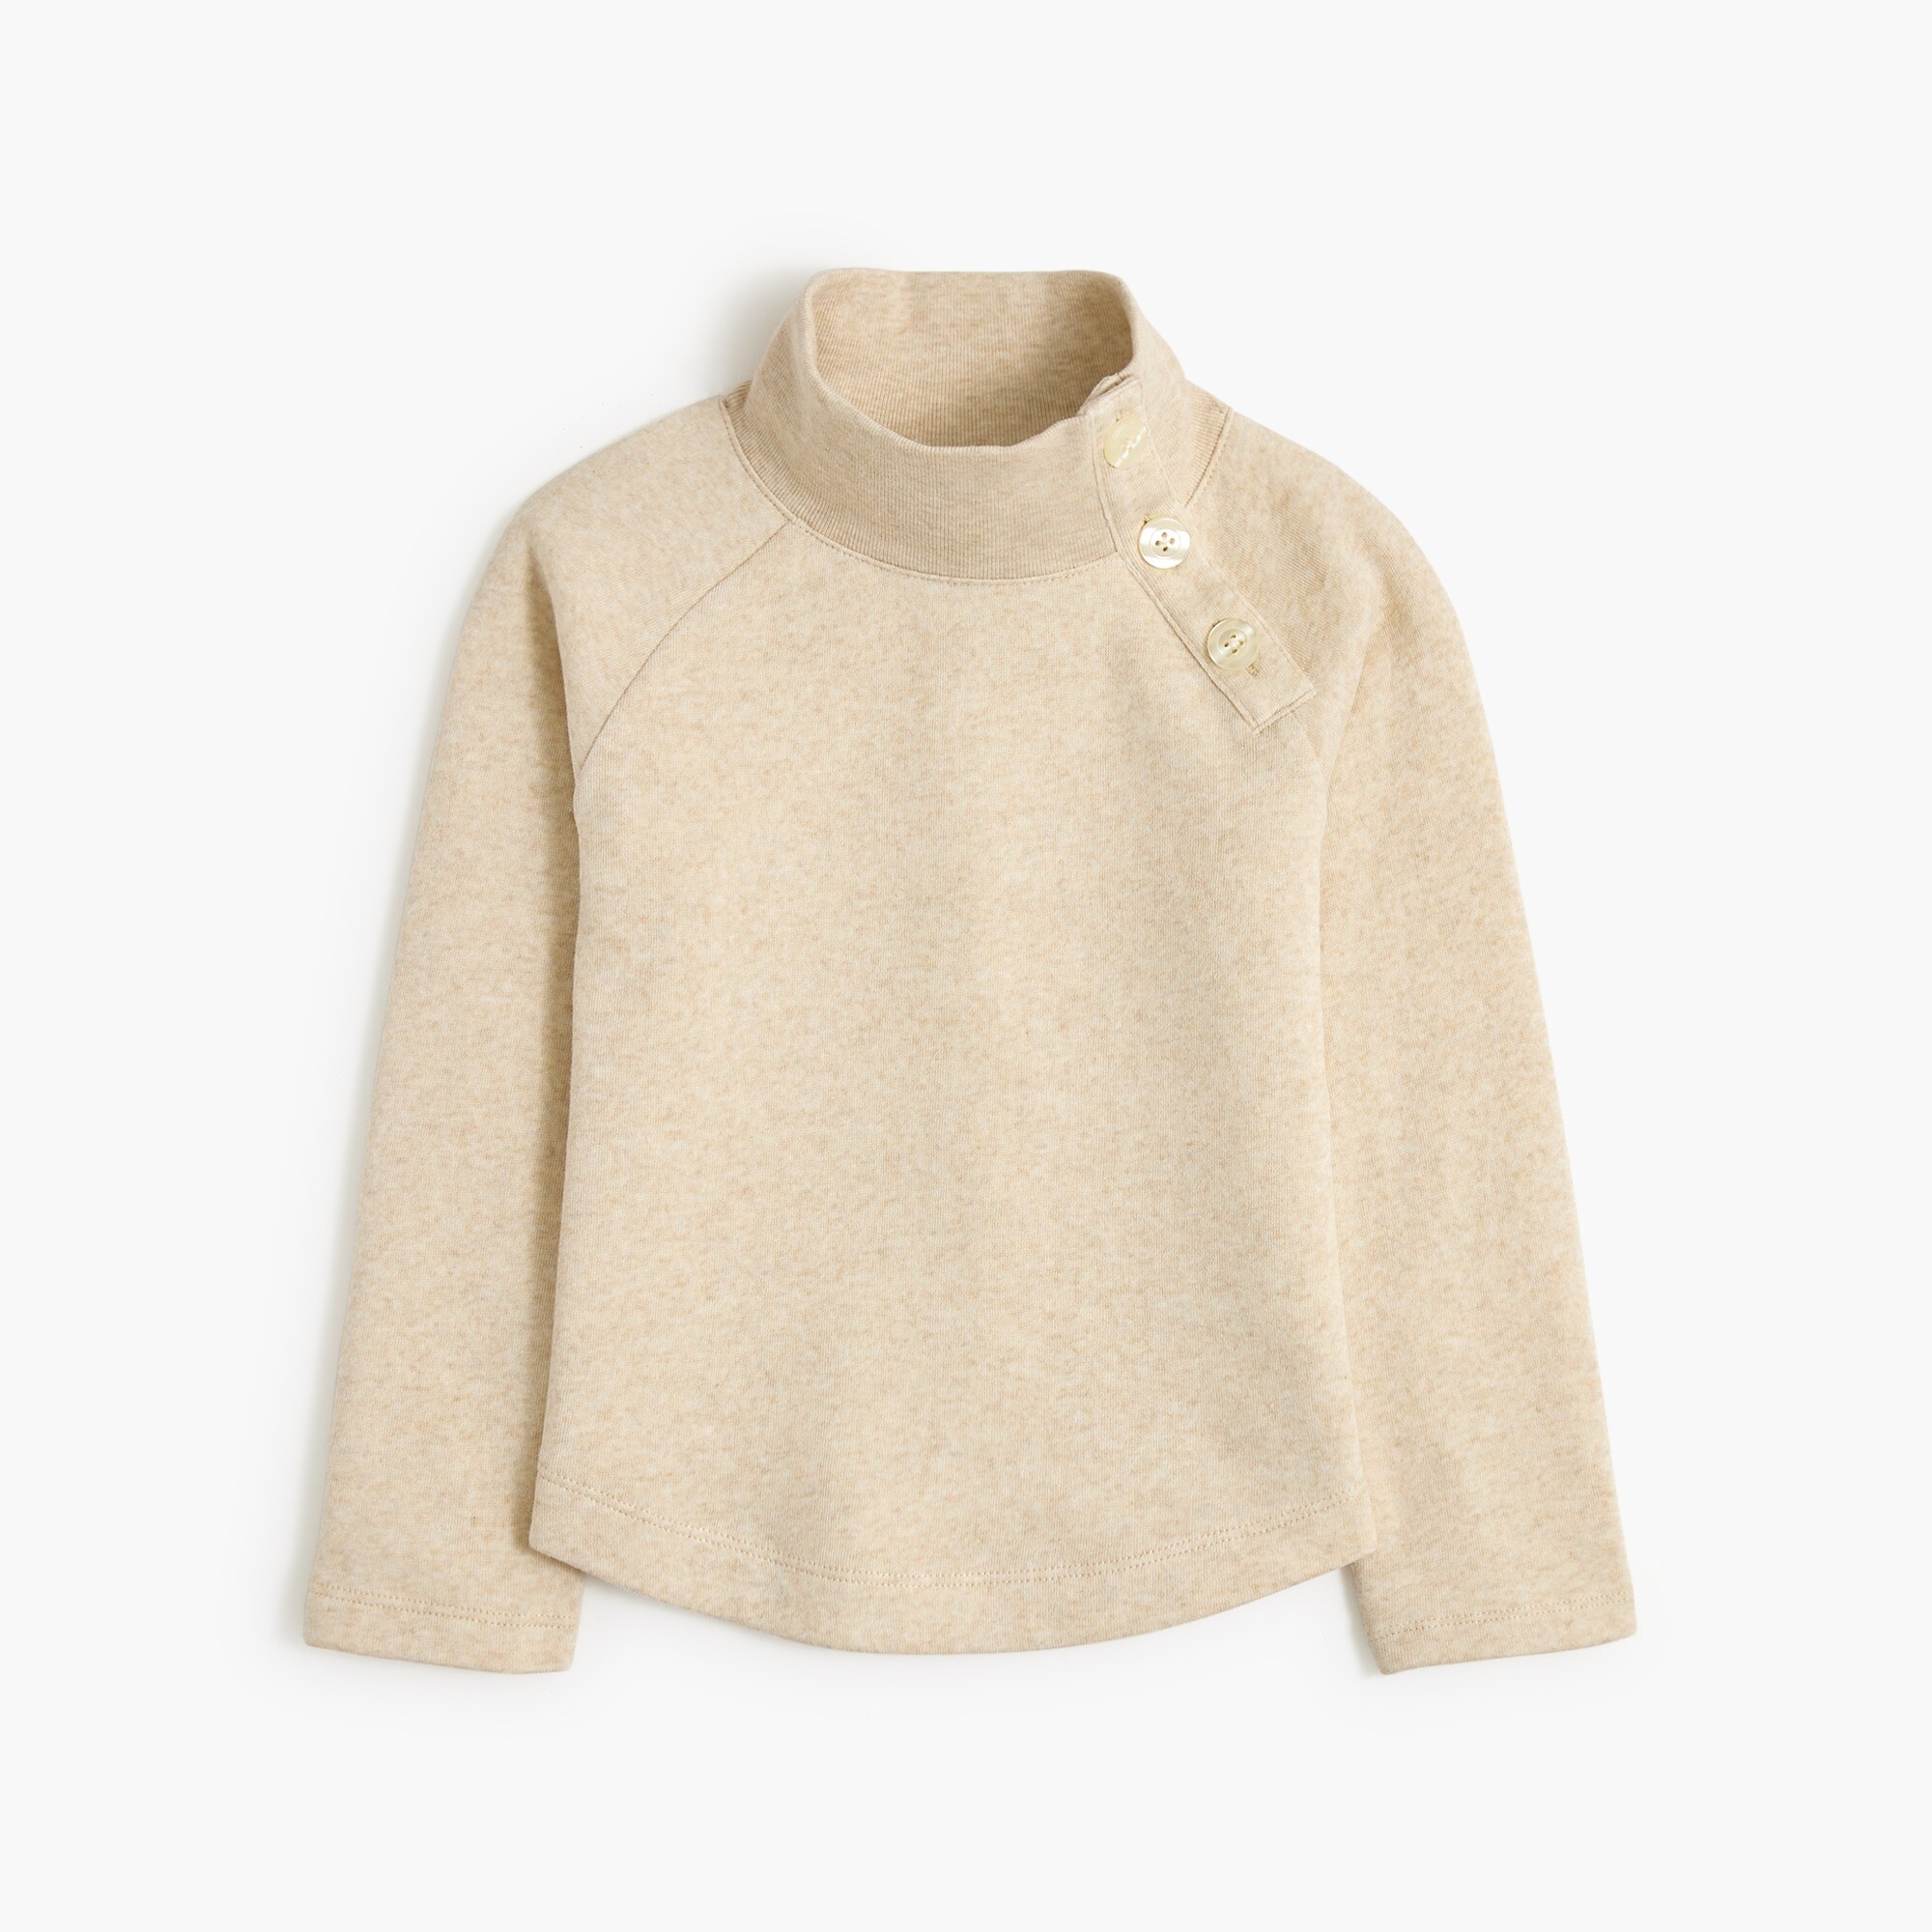  Girls' wide button-collar pullover sweatshirt